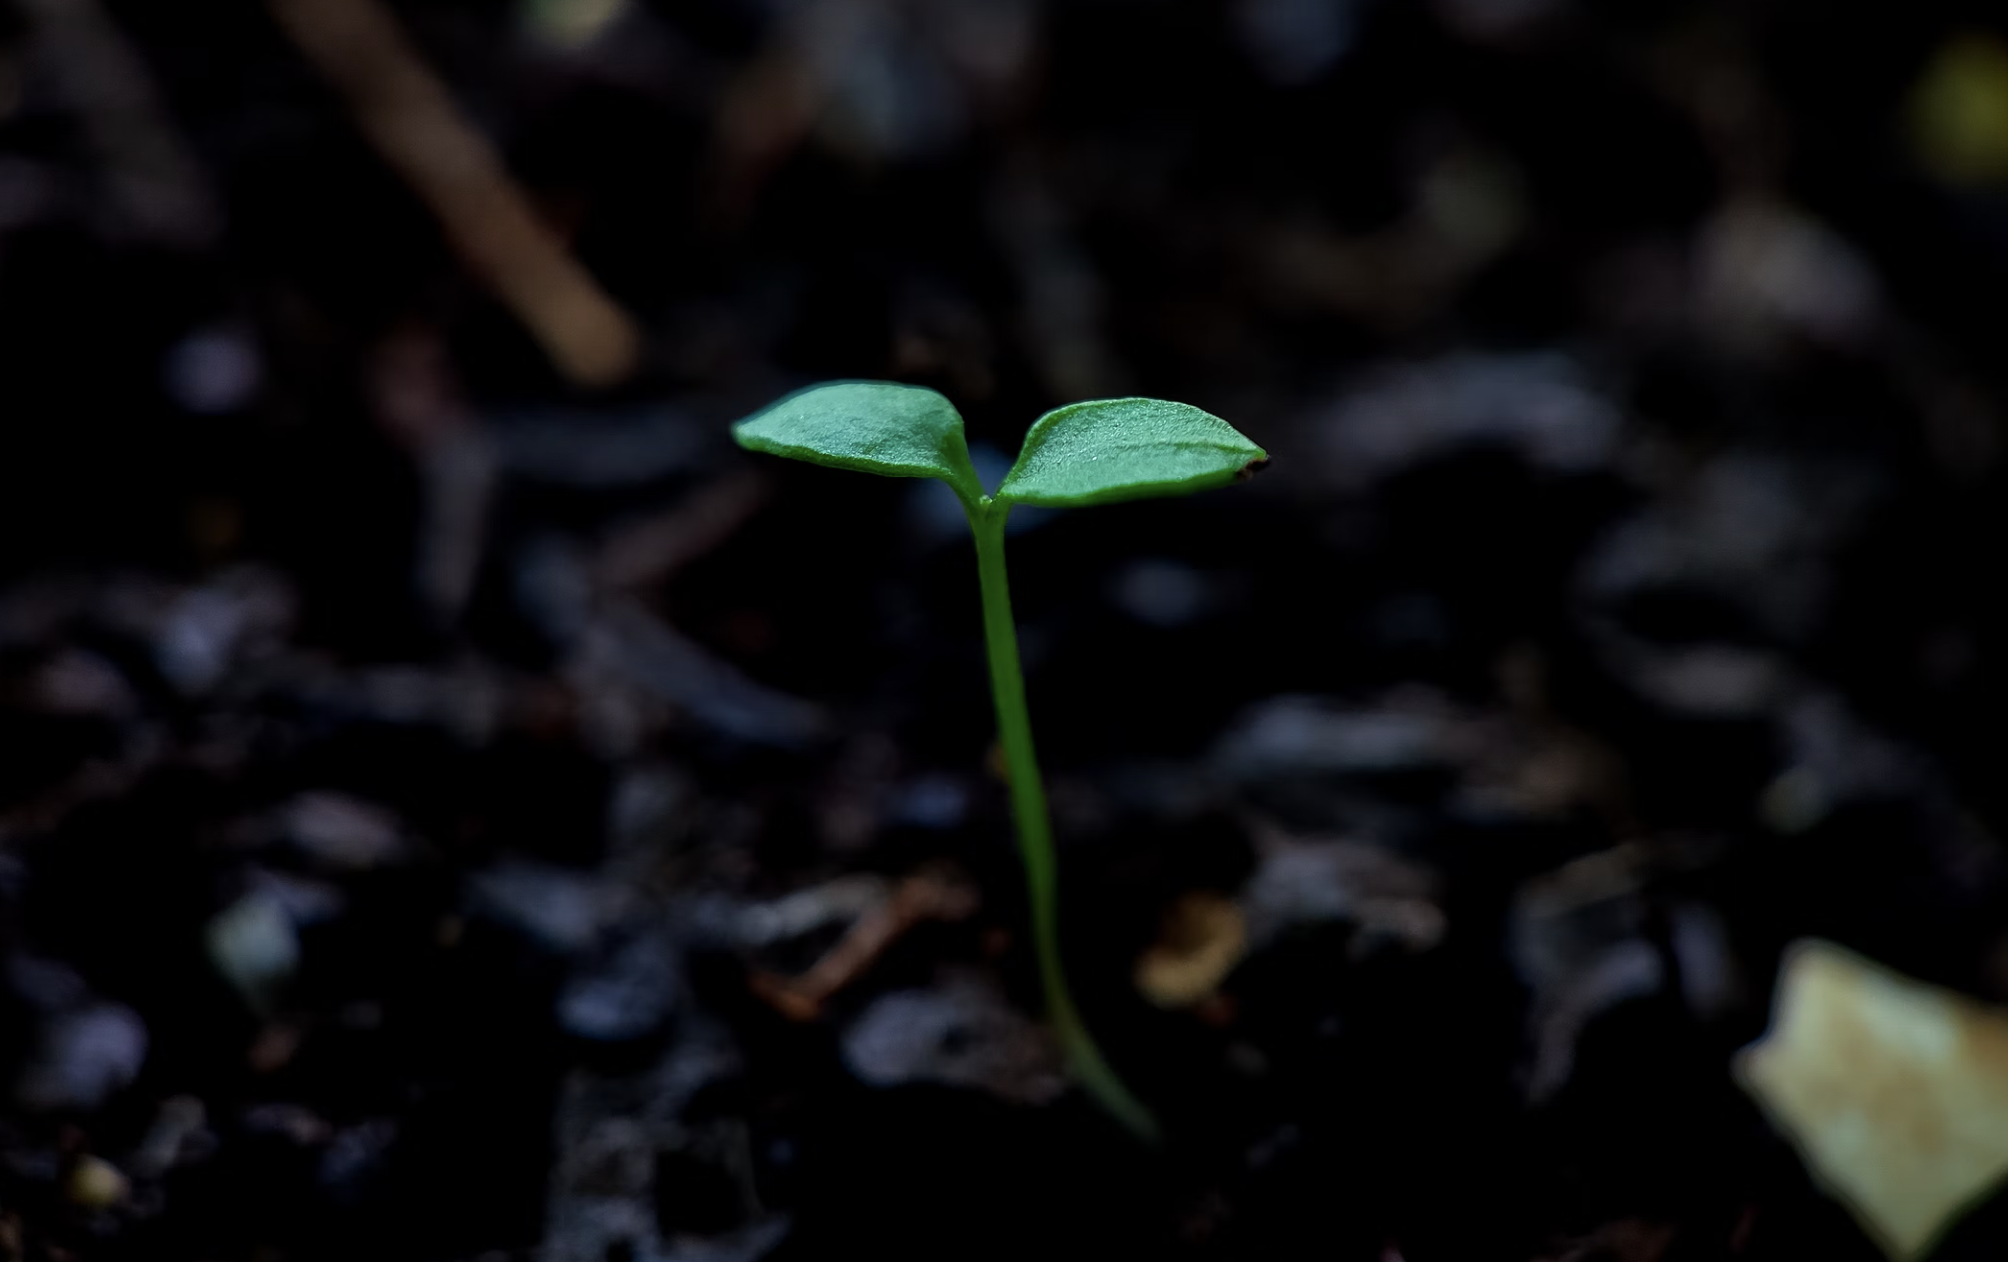 Seedling popping up, growing through soil